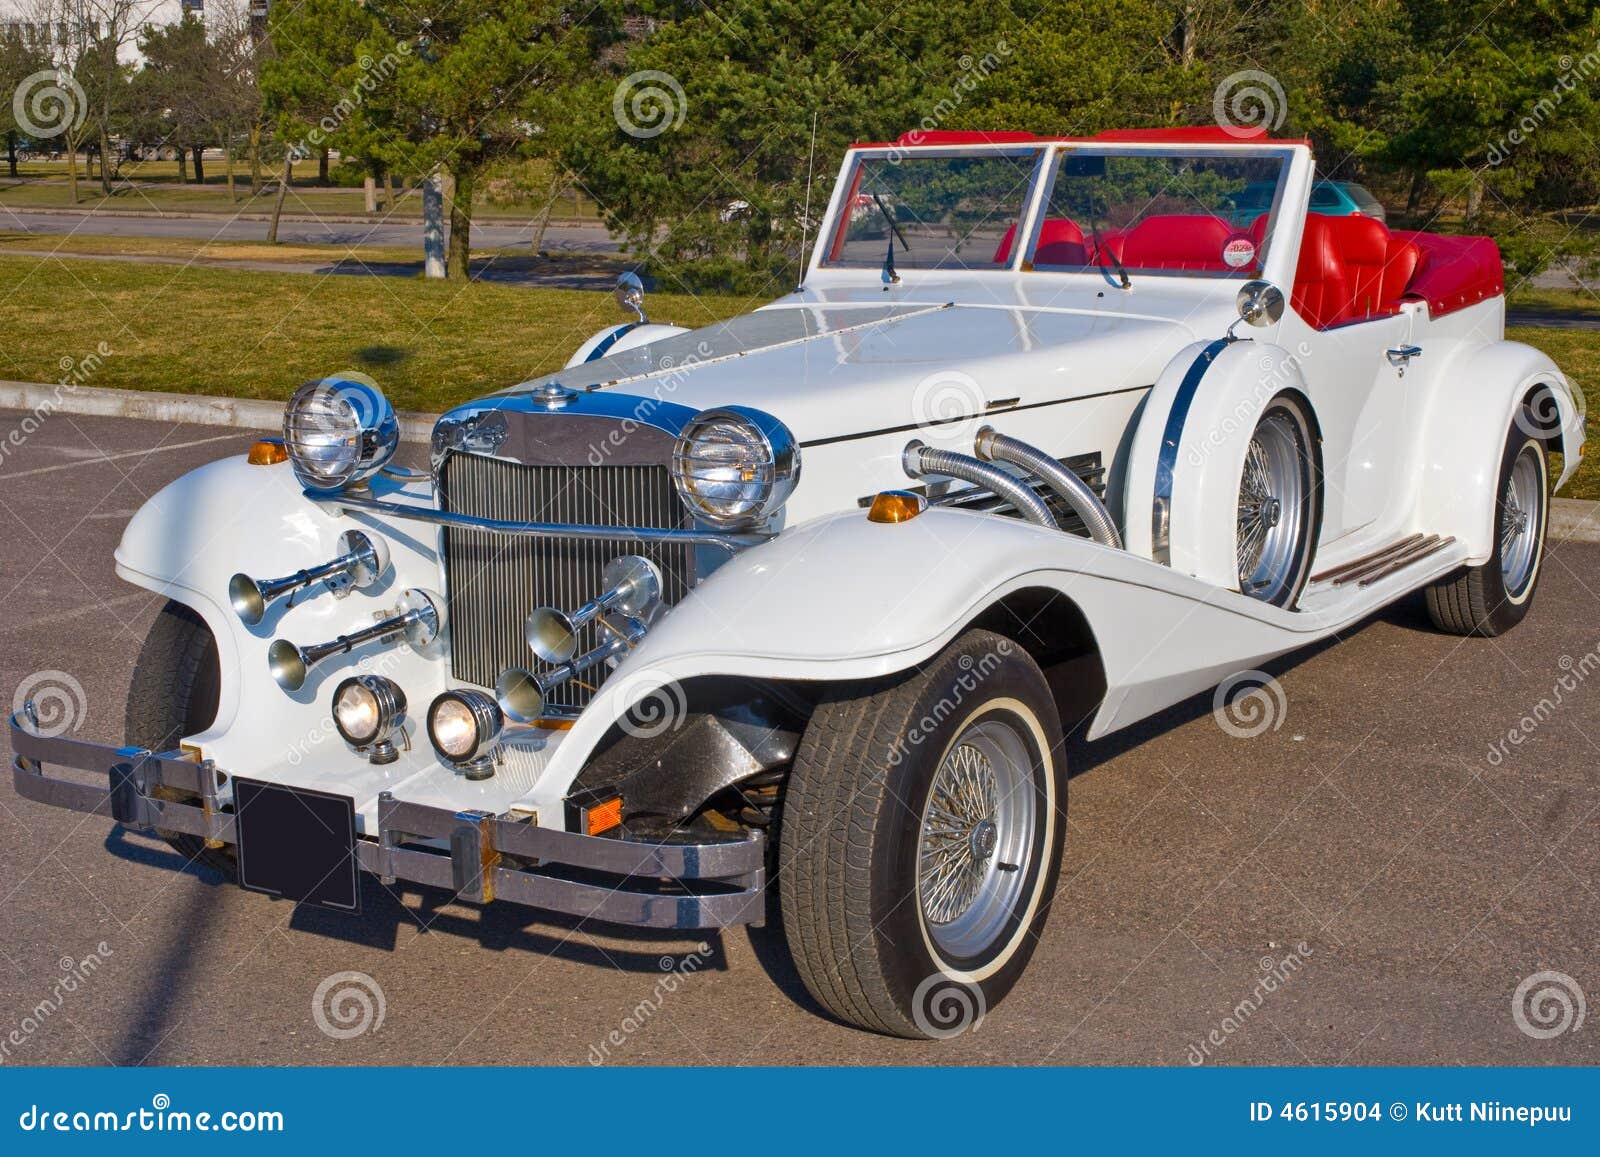 white excalibur car